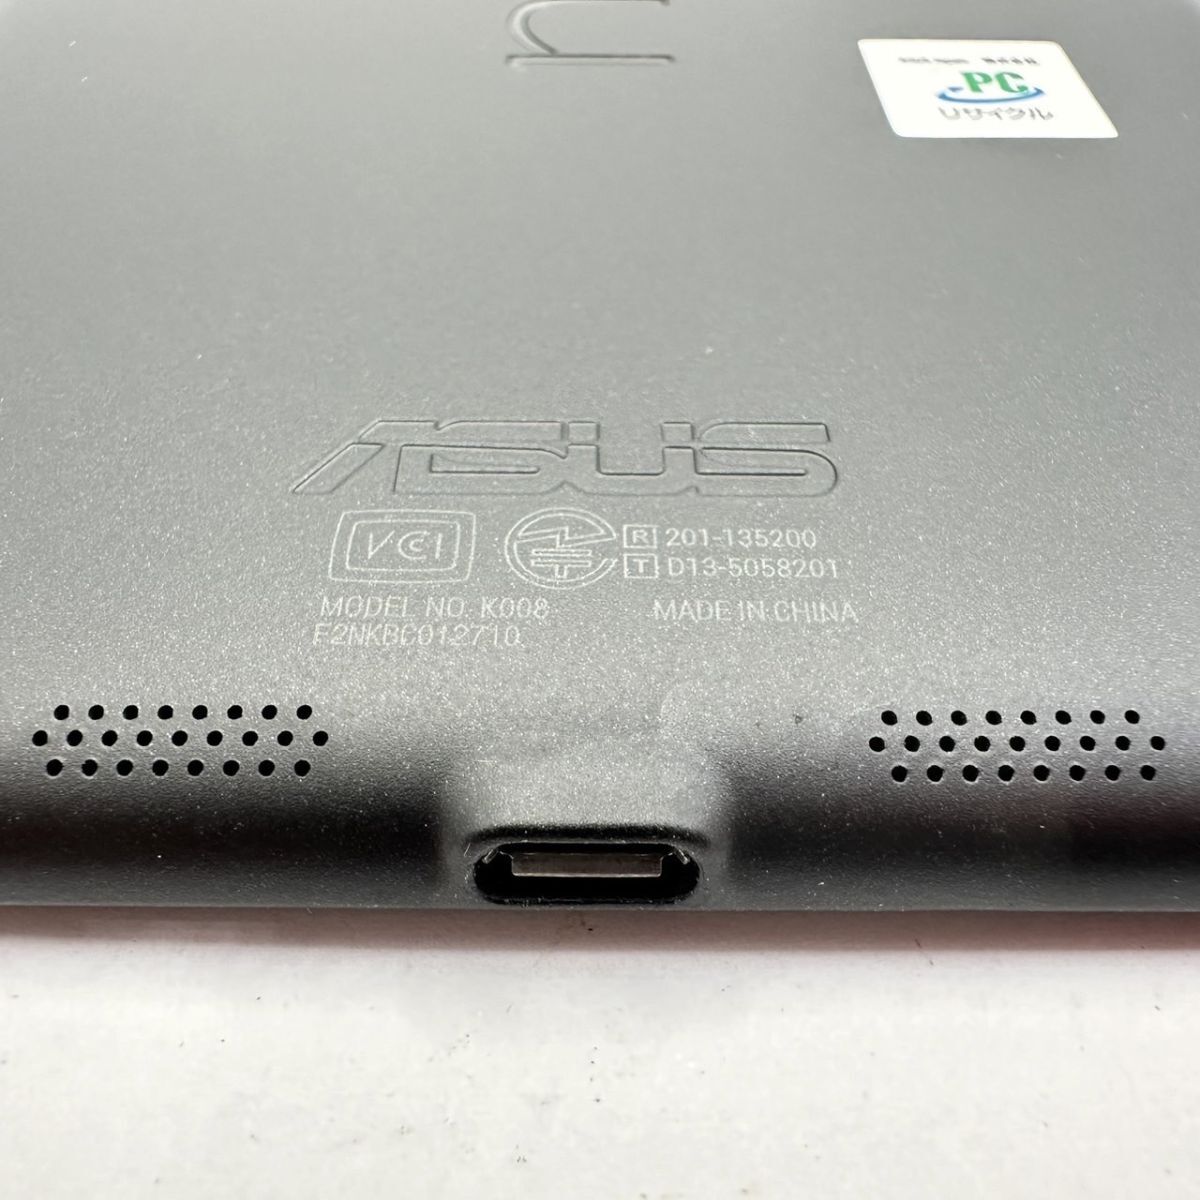 F828-SB4-888 ASUS エイスース Nexus7 K008 タブレット wifiモデル 16GB 7.02インチ ブラック 初期化済み 動作確認済み ①_画像7